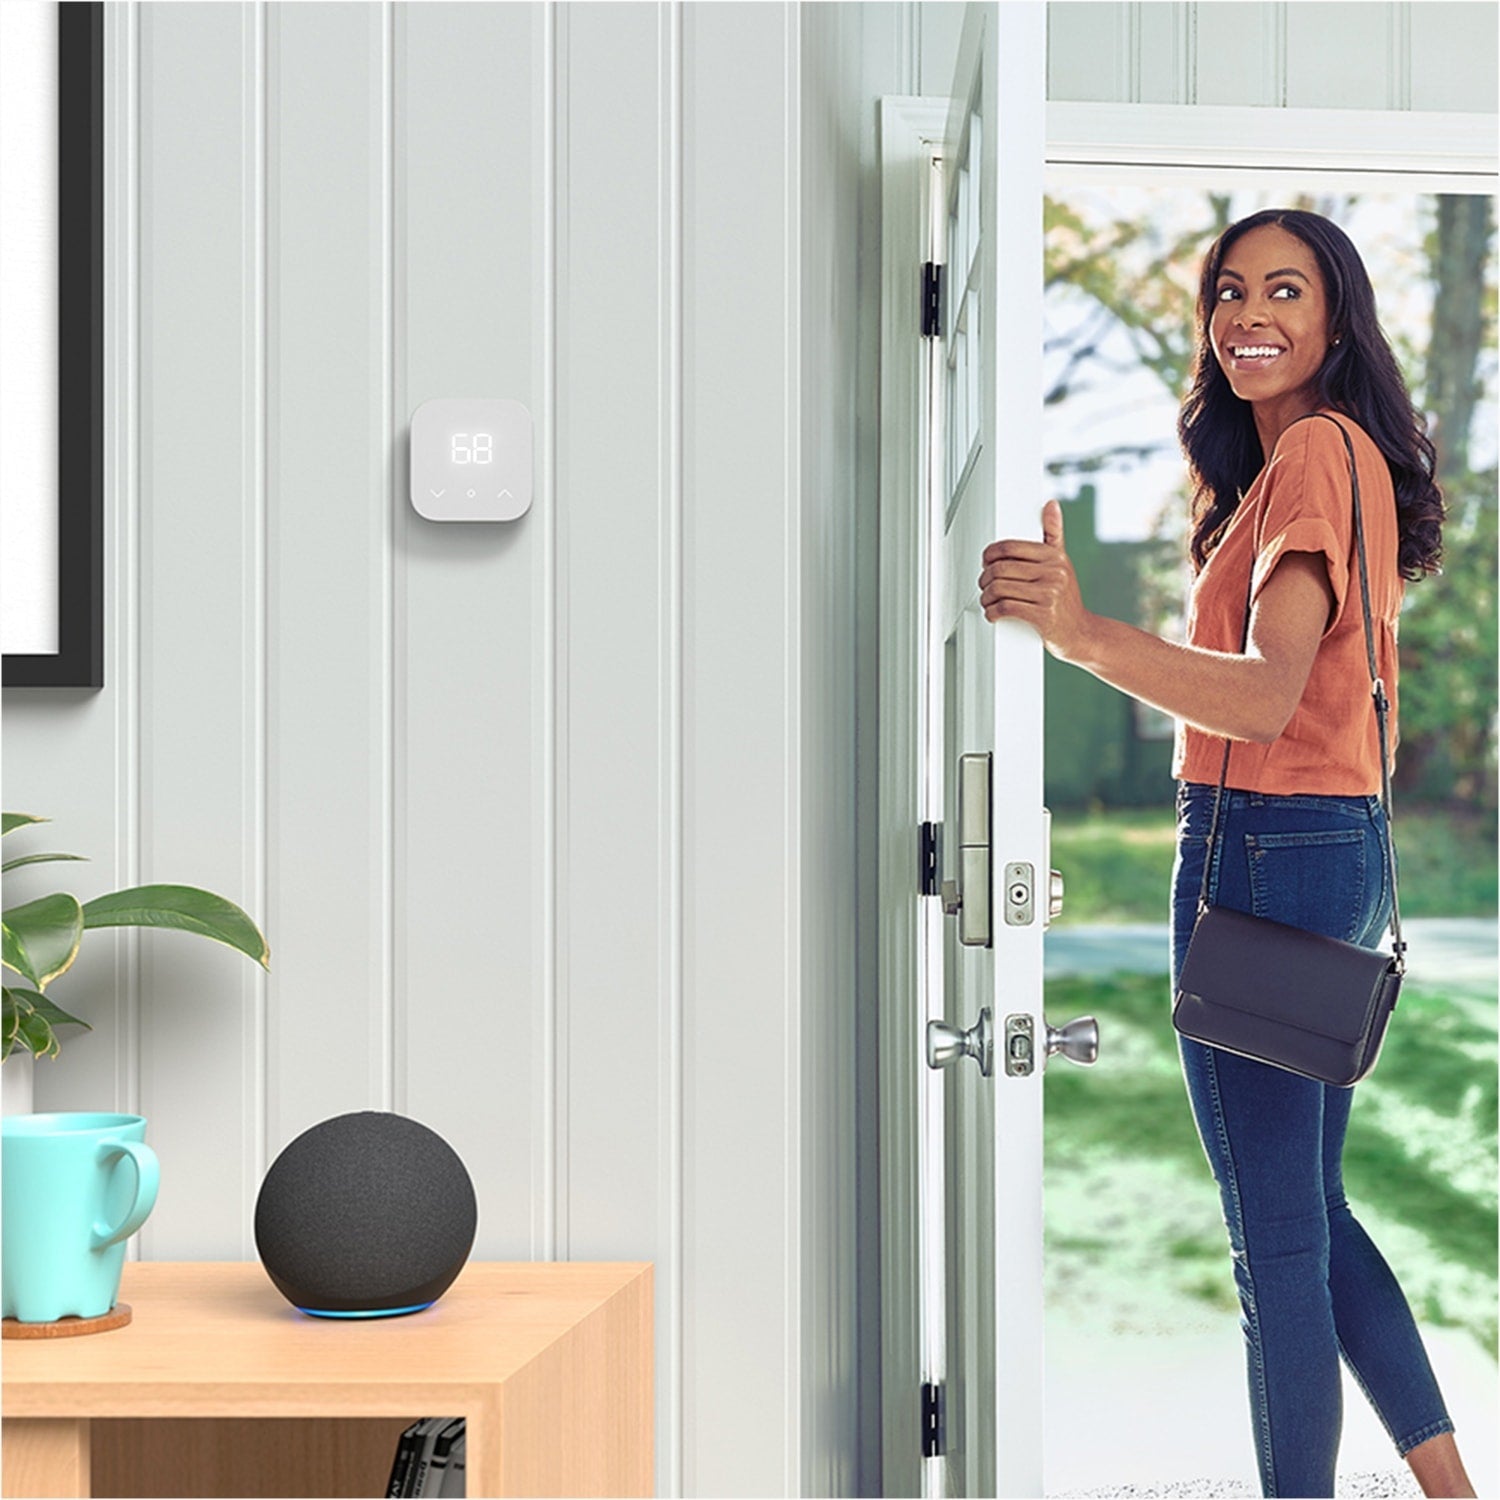 Amazon Smart Thermostat - Amazon Smart Thermostat